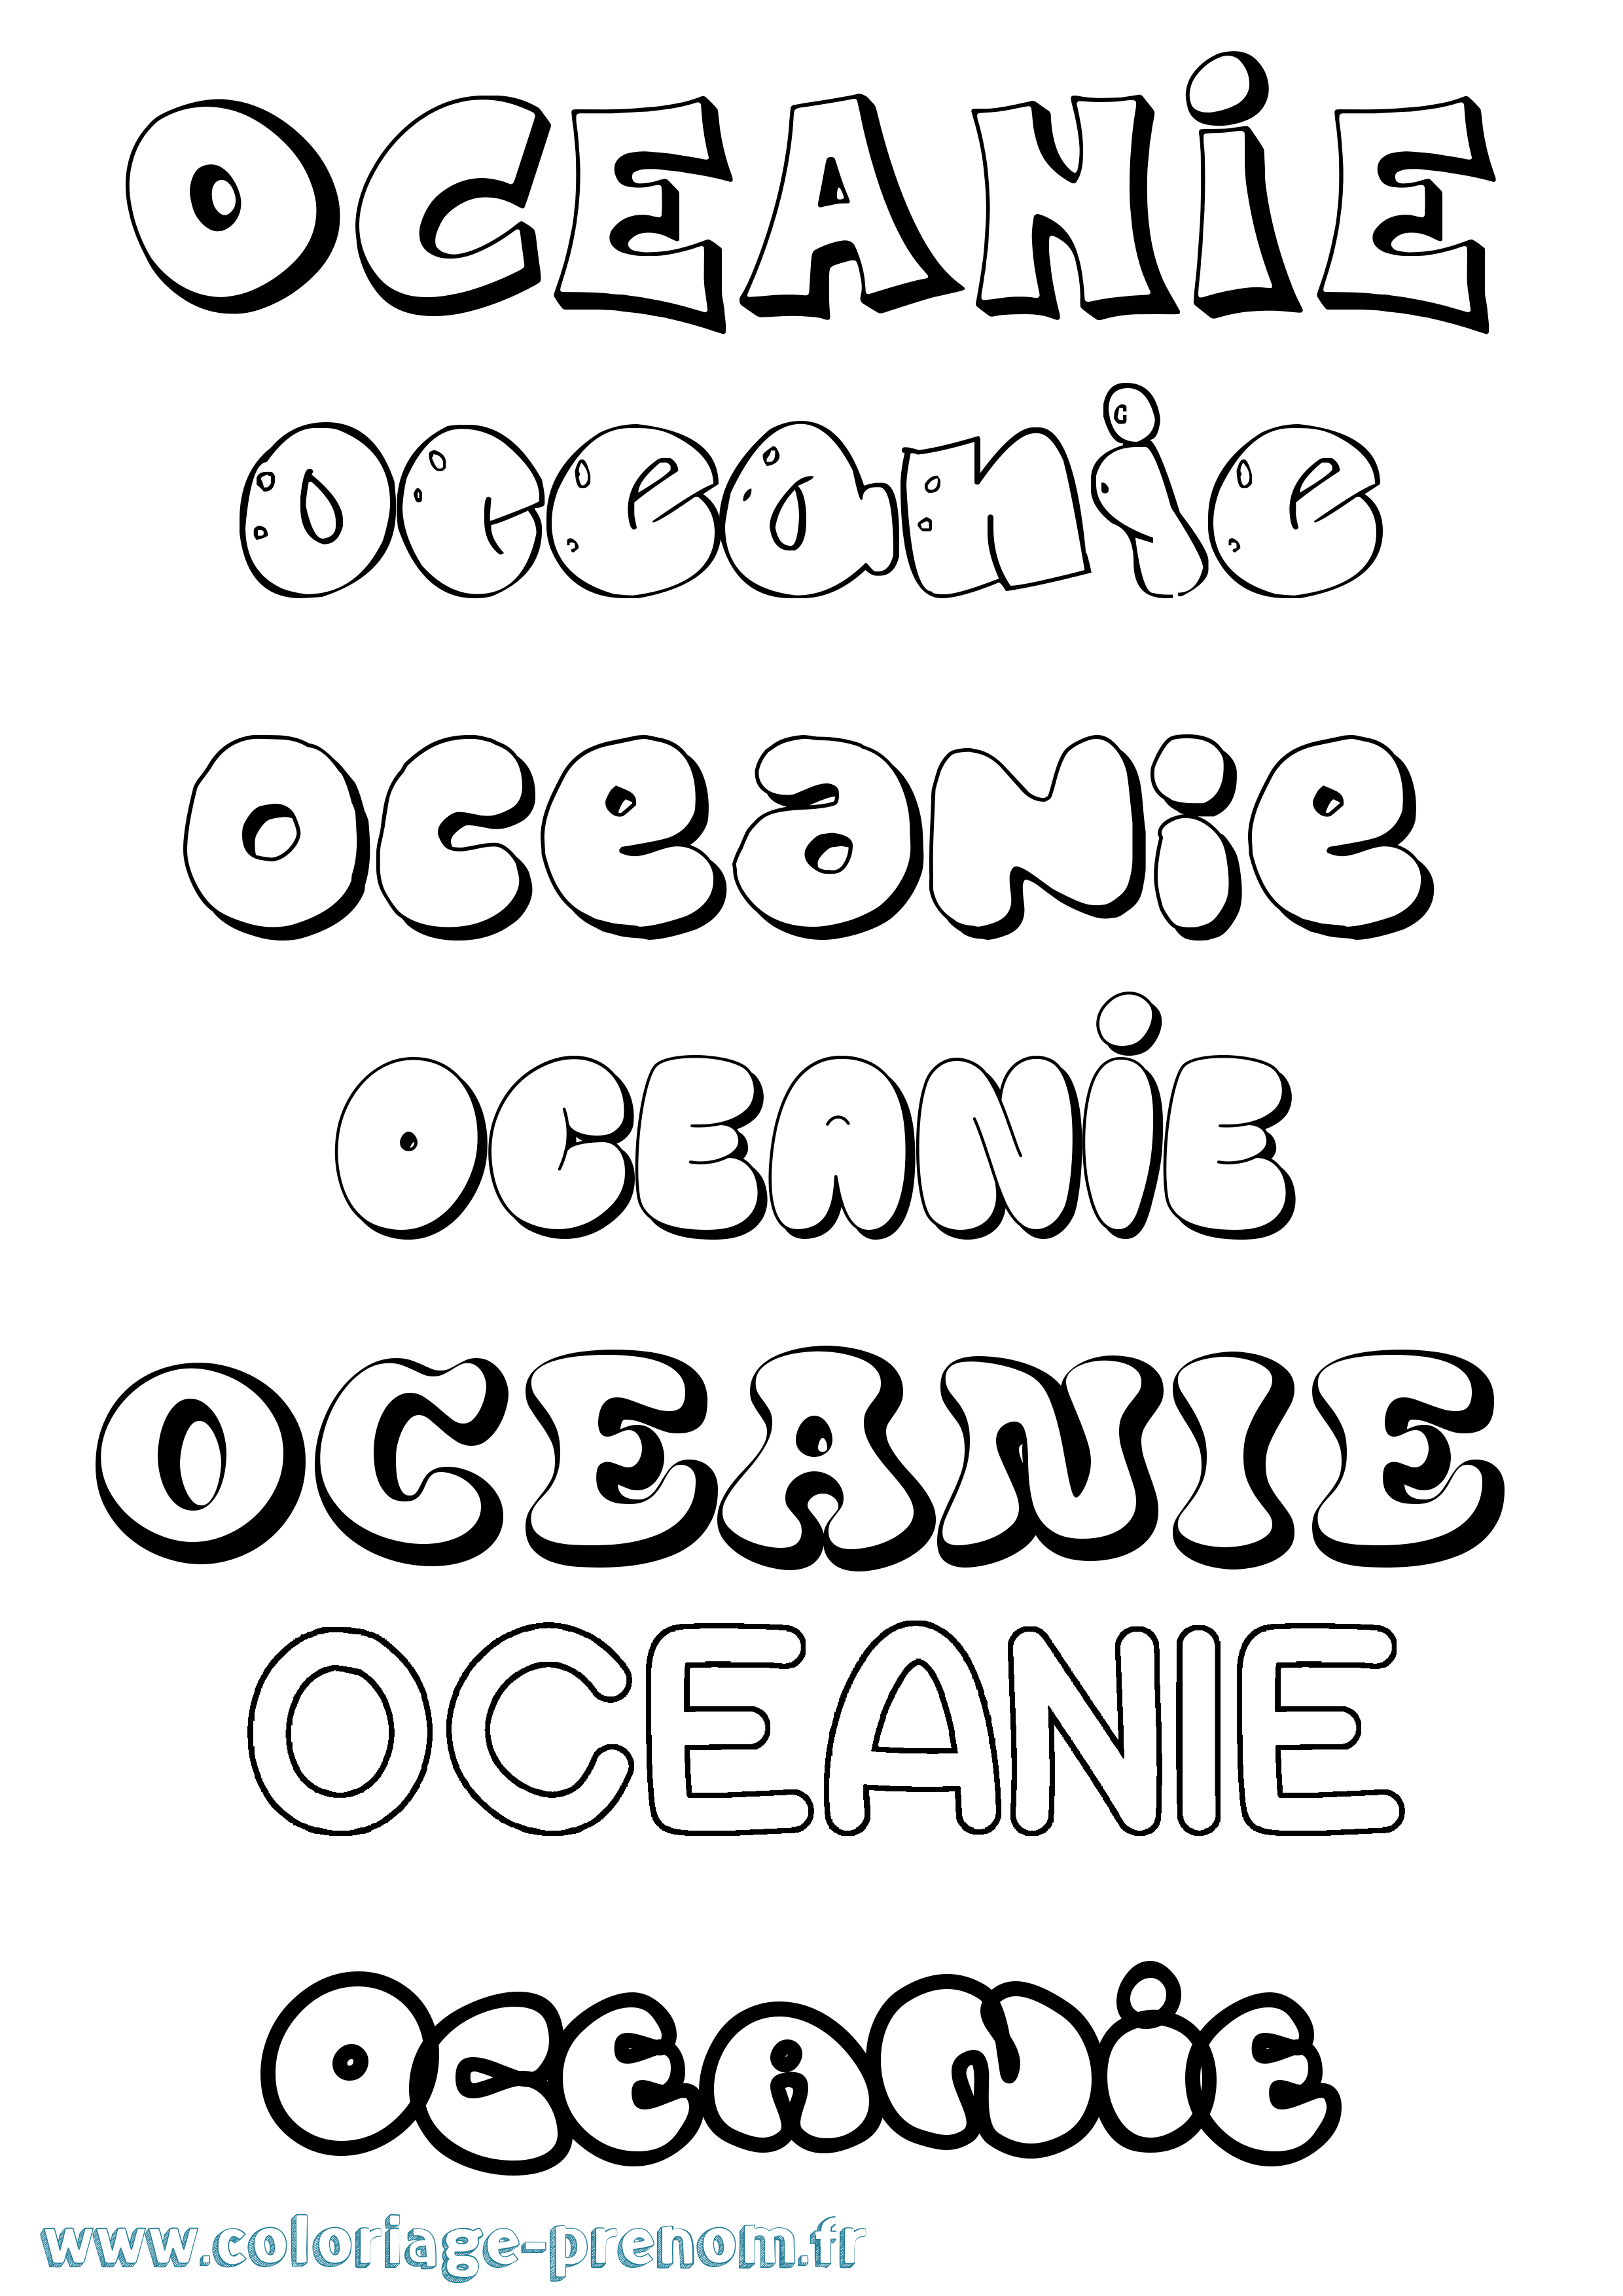 Coloriage prénom Oceanie Bubble